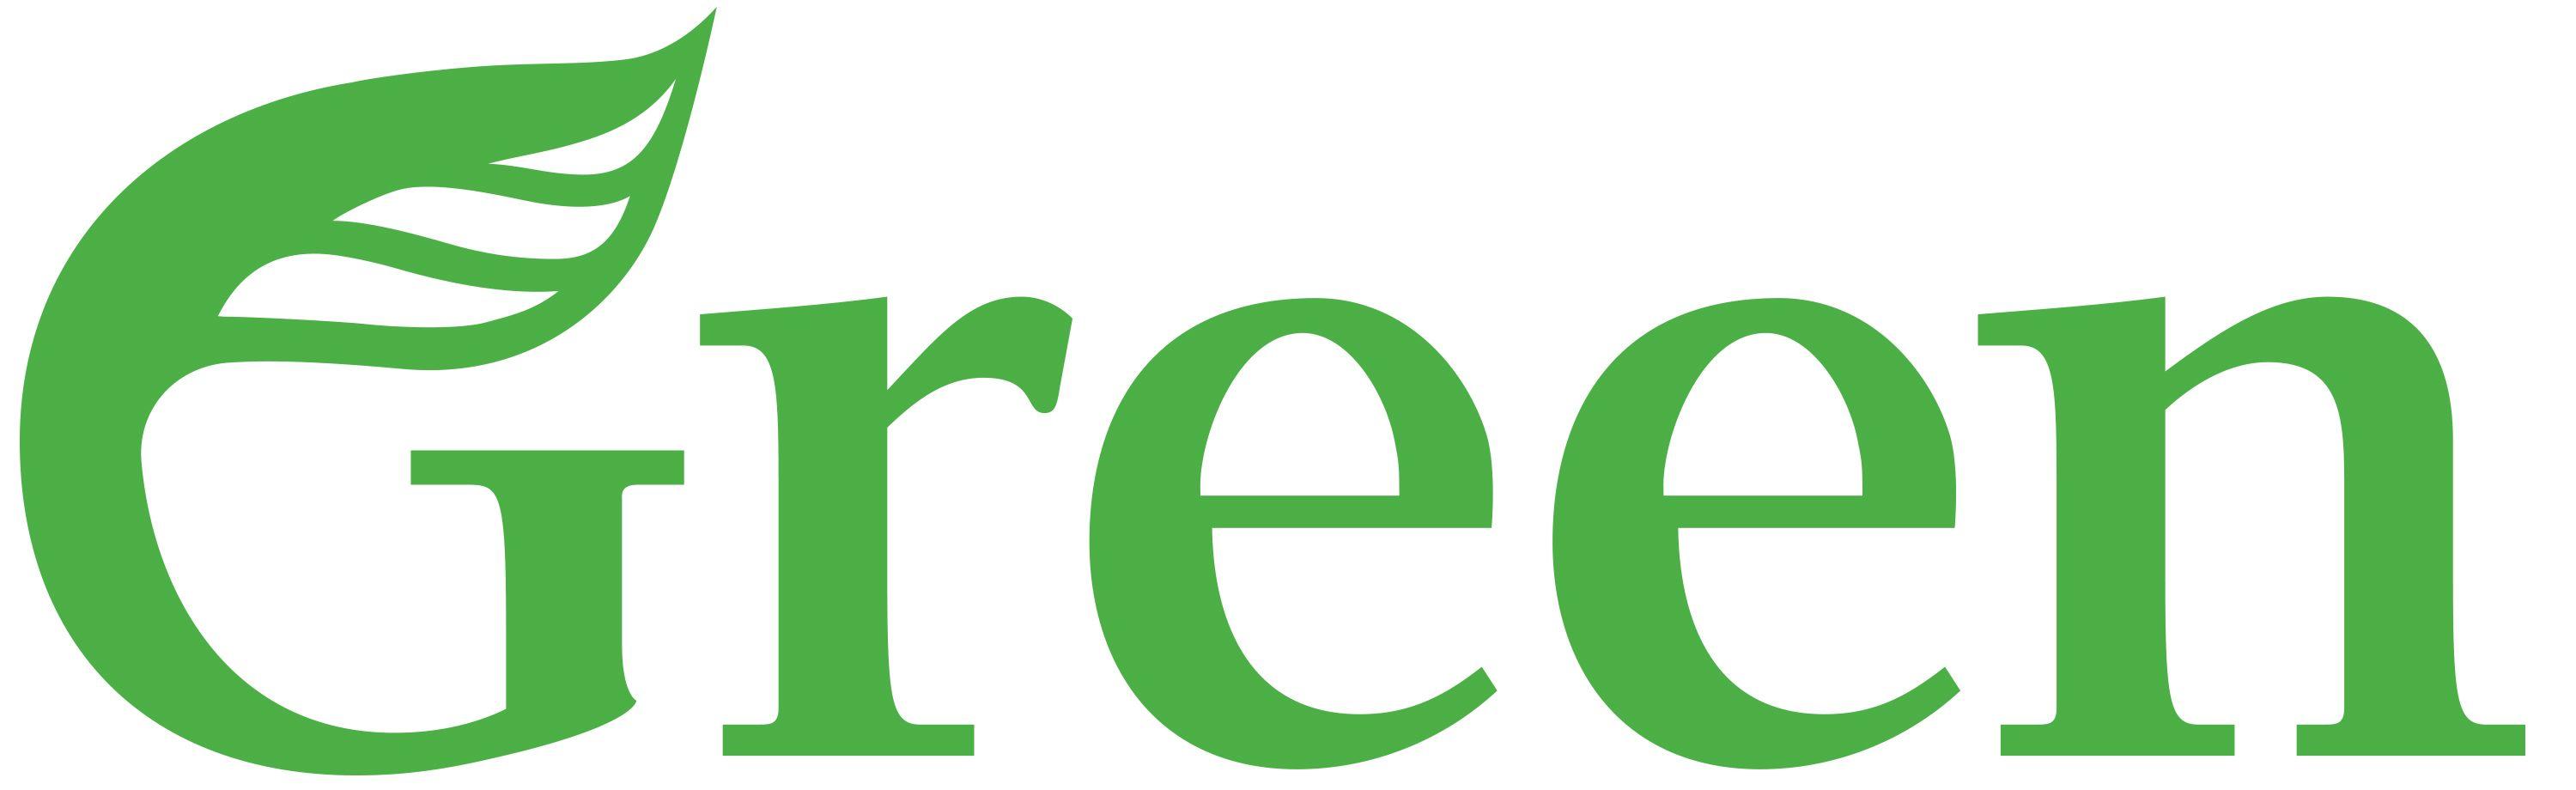 Green Party Logo - File:Green Party of Aotearoa New Zealand logo.jpg - Wikimedia Commons